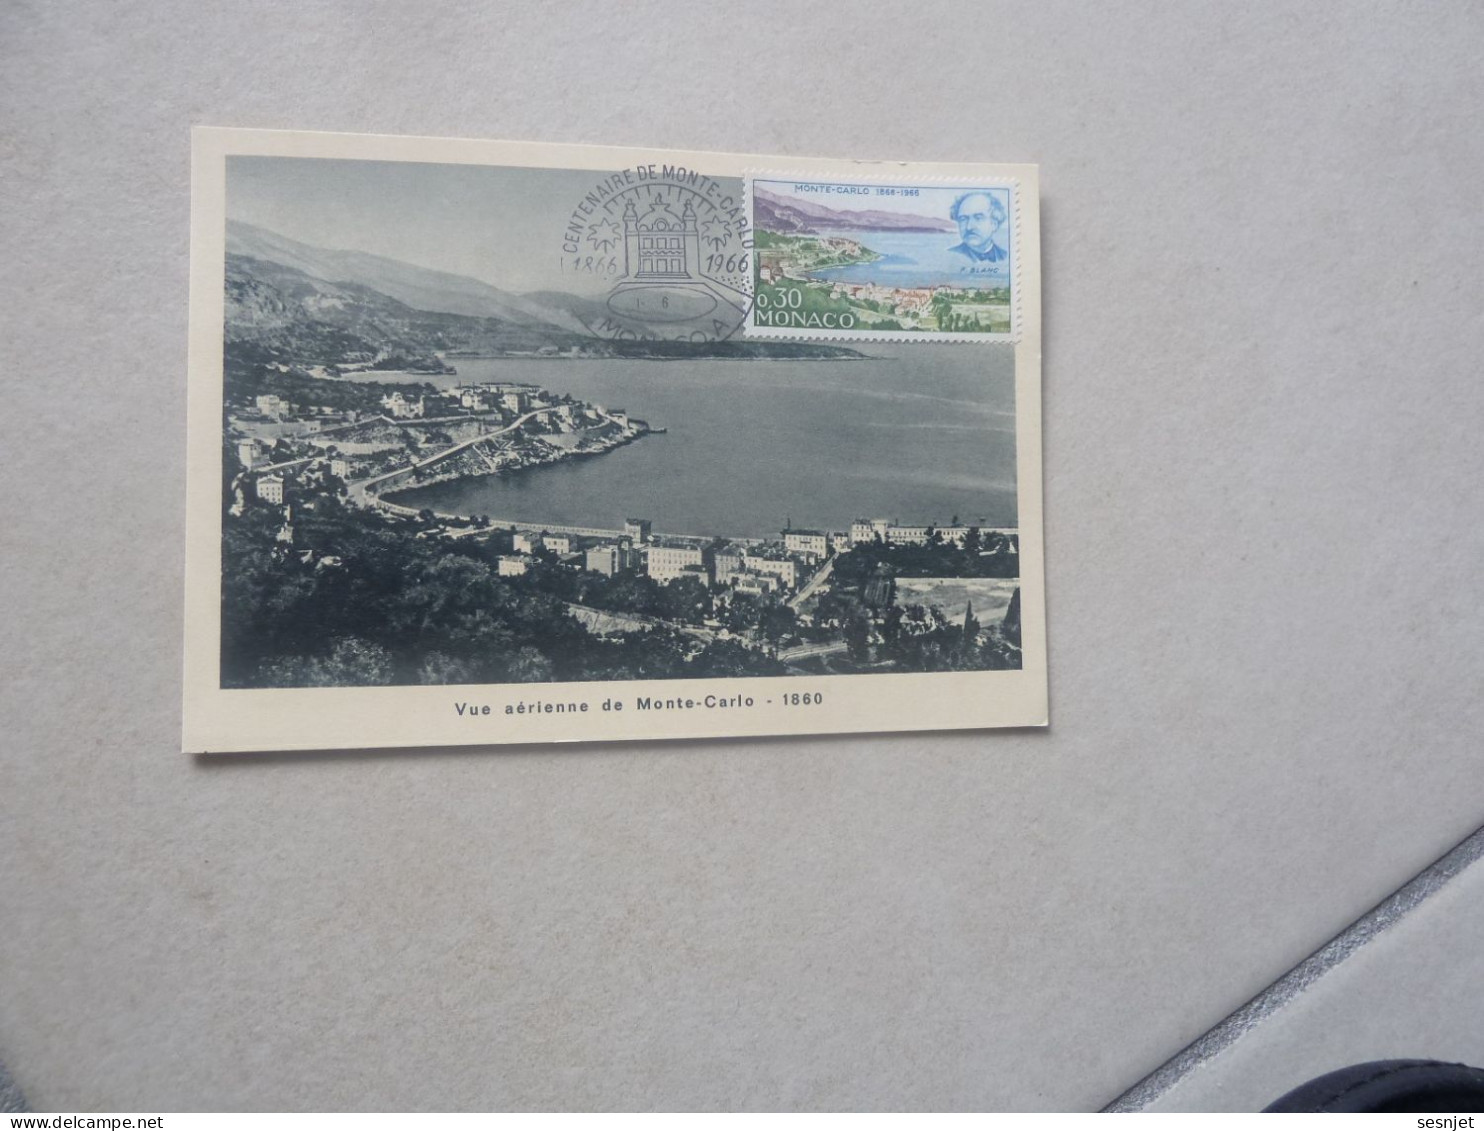 Monaco - Vue Aérienne De Monte-Carlo (1860) - 0f.30 - Yt 697 - Carte Premier Jour D'Emission - Année 1966 - - Cartoline Maximum